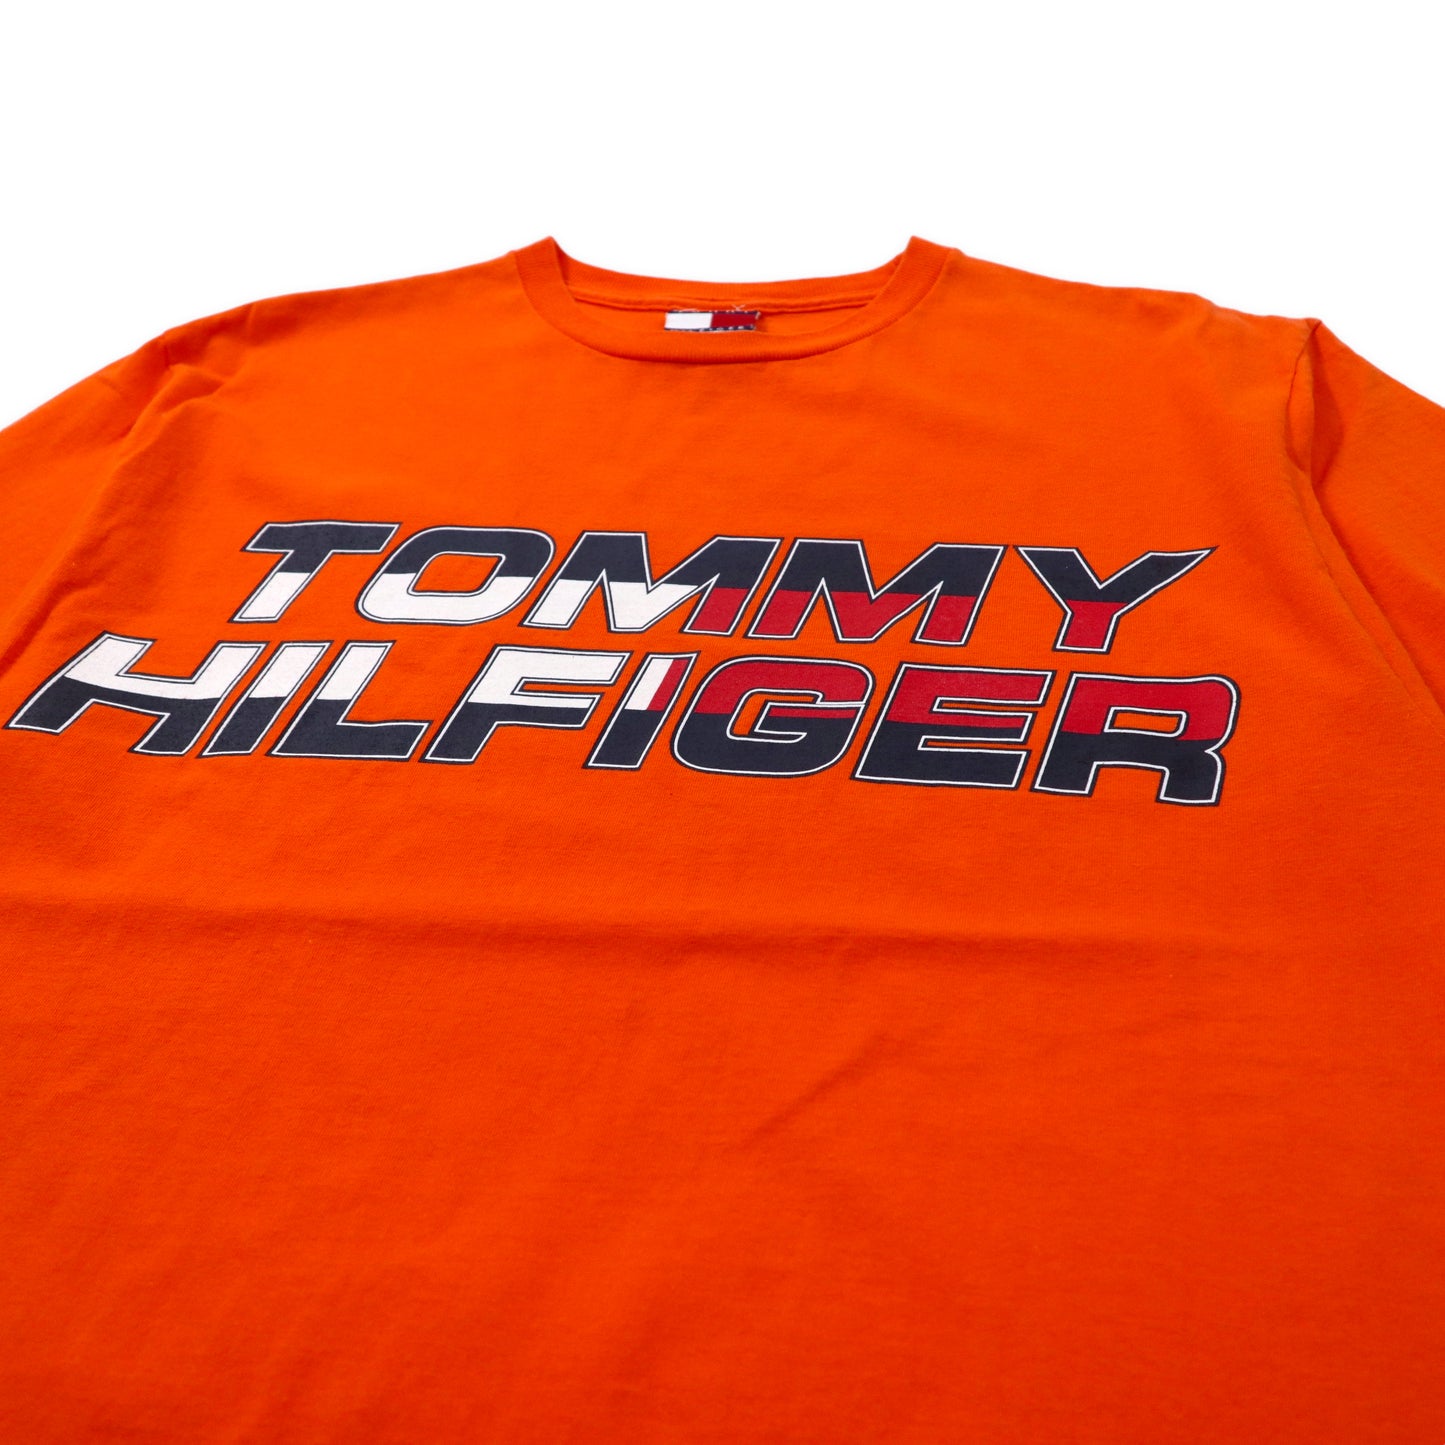 TOMMY HILFIGER USA製 ビッグサイズ ロゴプリントTシャツ S オレンジ コットン